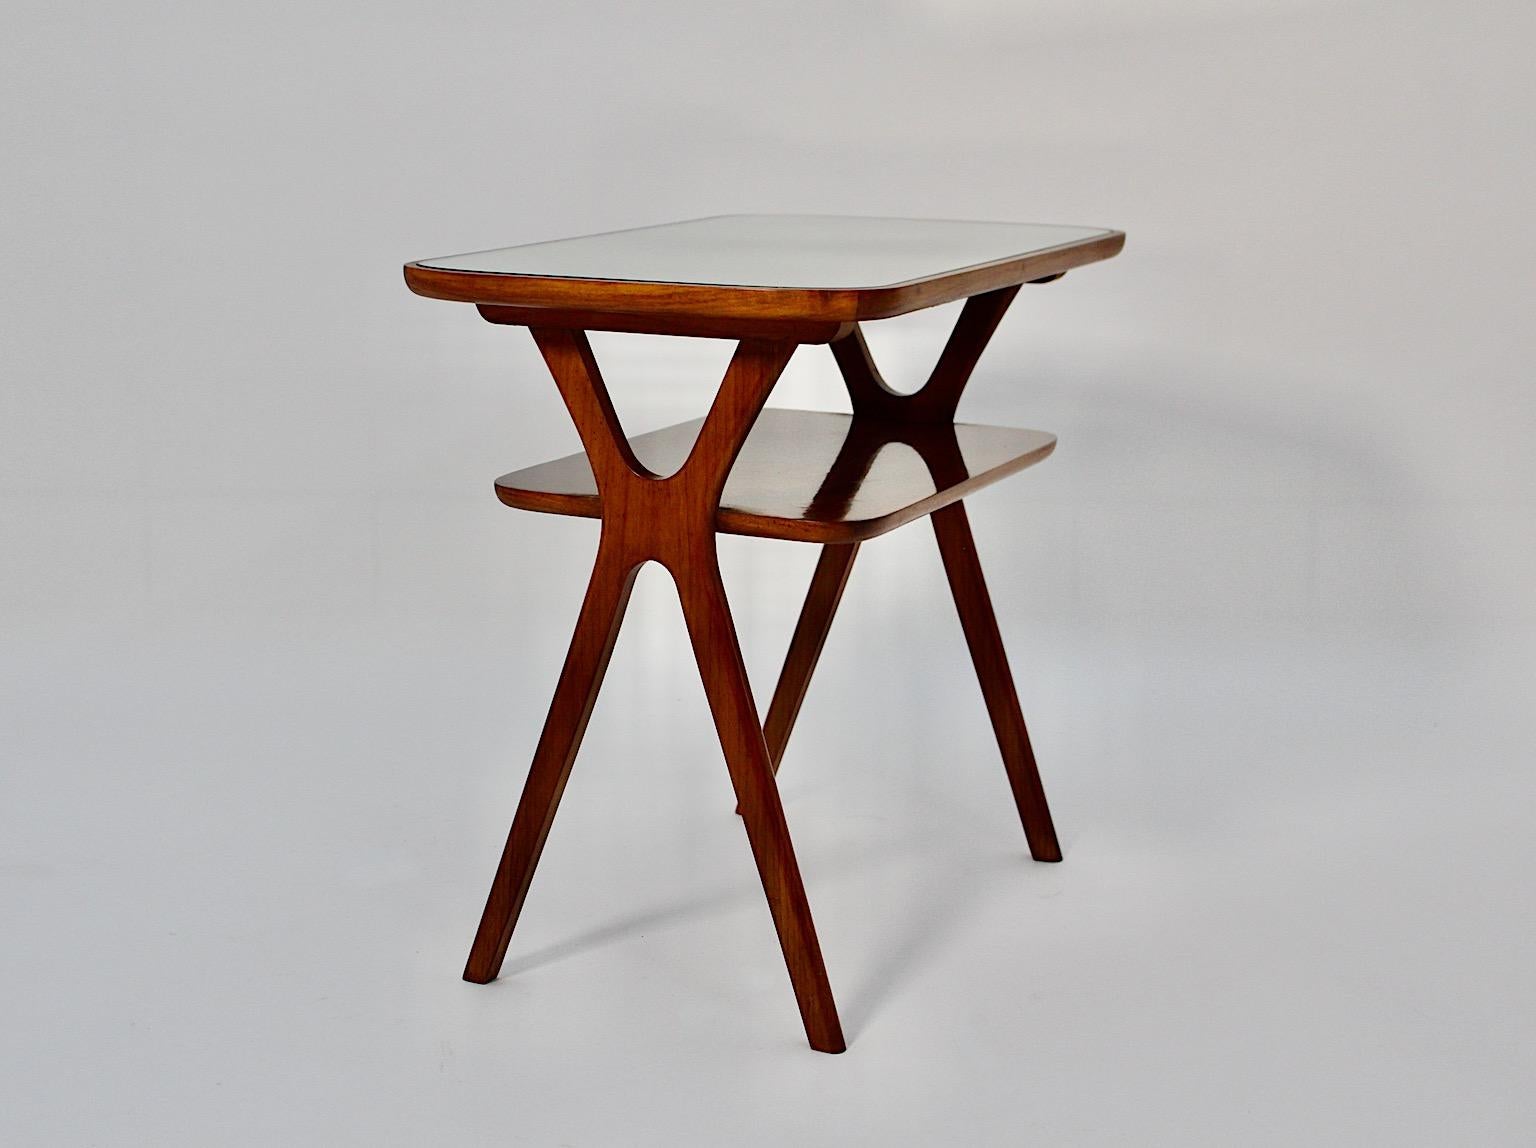 Table d'appoint ou table de nuit vintage Mid Century Modern style Ico Parisi, 1950s Italy.
Une superbe table d'appoint dans le style d'Ico Parisi en construction X surmontée d'une plaque de miroir incrustée.
D'une chaleur et d'une profondeur